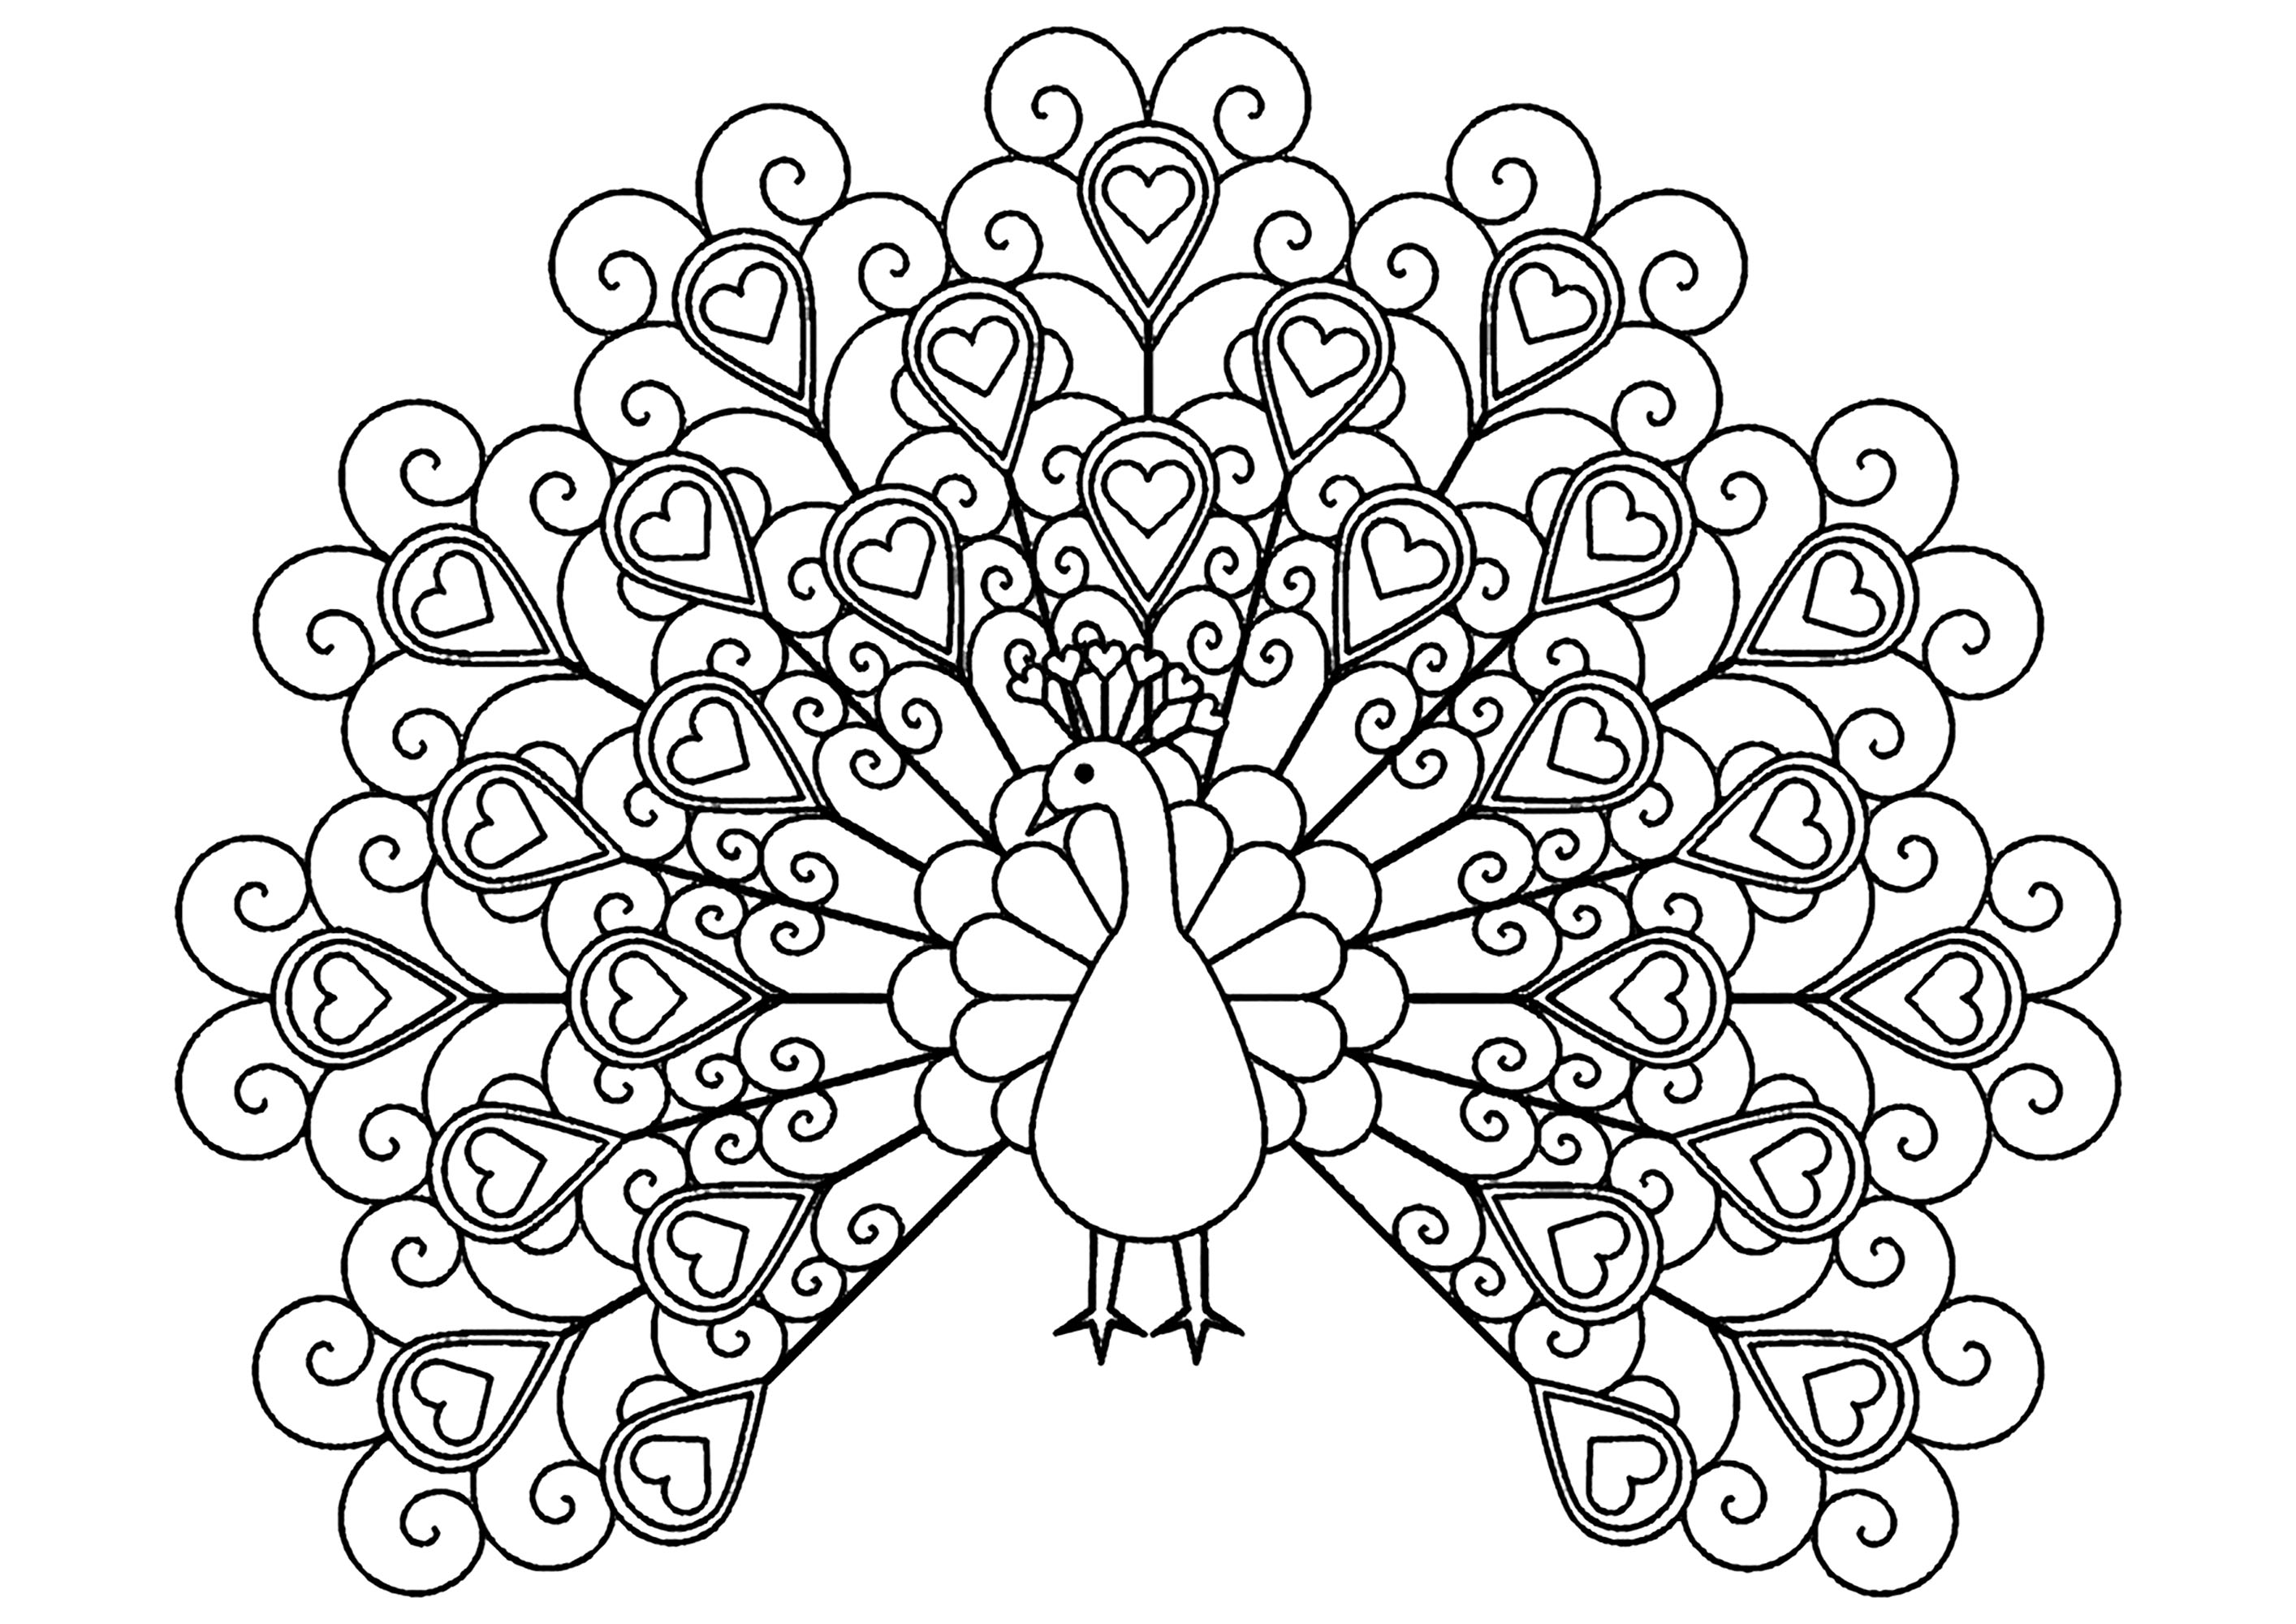 Página para colorir simples de um pavão cheio de corações elegantes